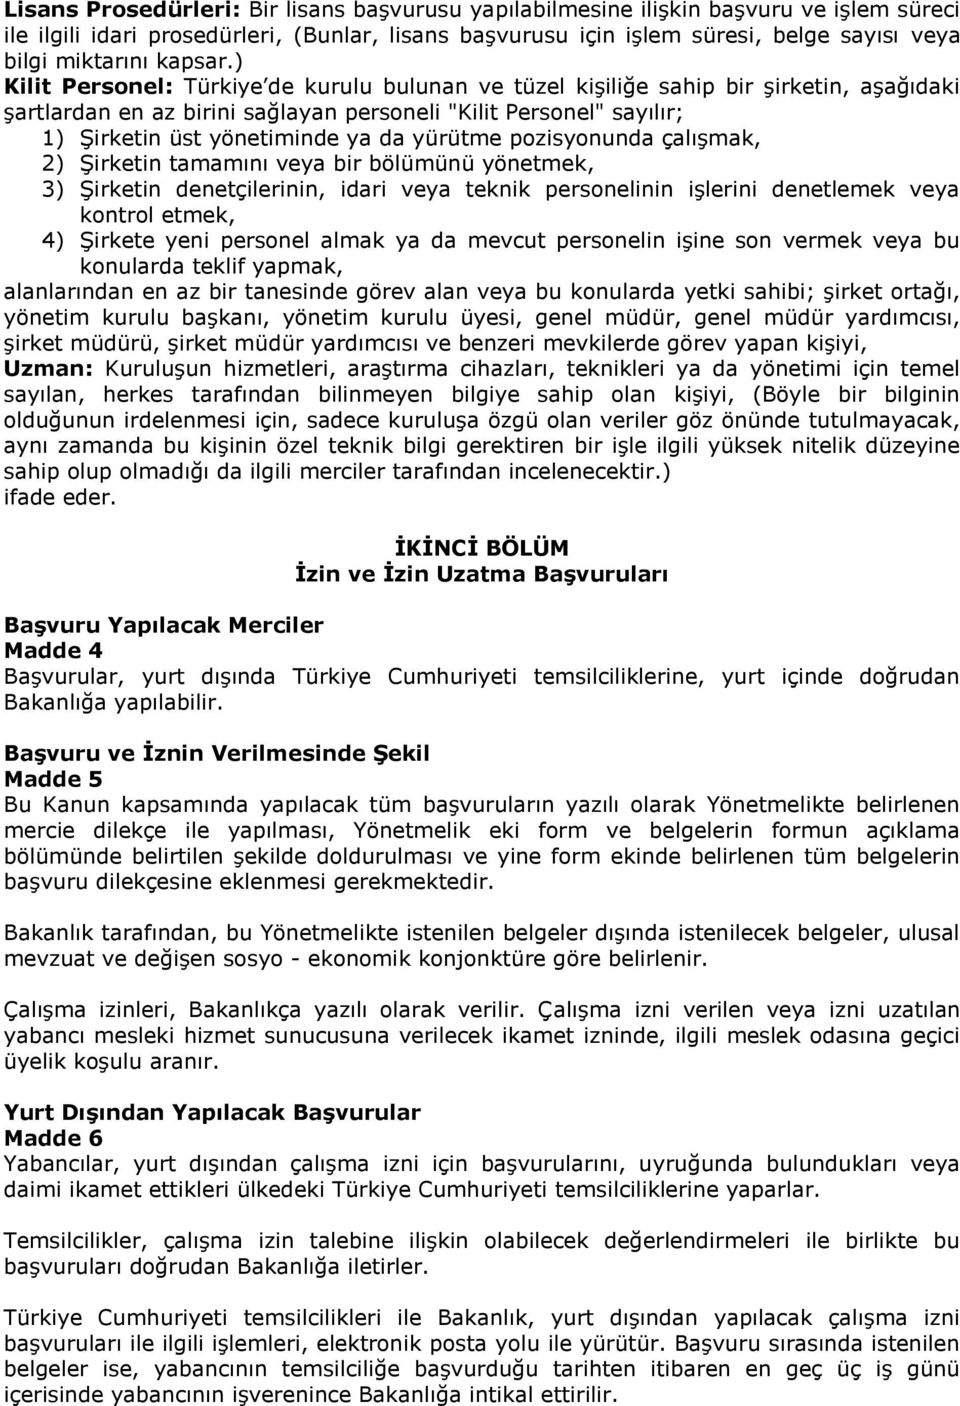 ) Kilit Personel: Türkiye de kurulu bulunan ve tüzel kişiliğe sahip bir şirketin, aşağıdaki şartlardan en az birini sağlayan personeli "Kilit Personel" sayılır; 1) Şirketin üst yönetiminde ya da